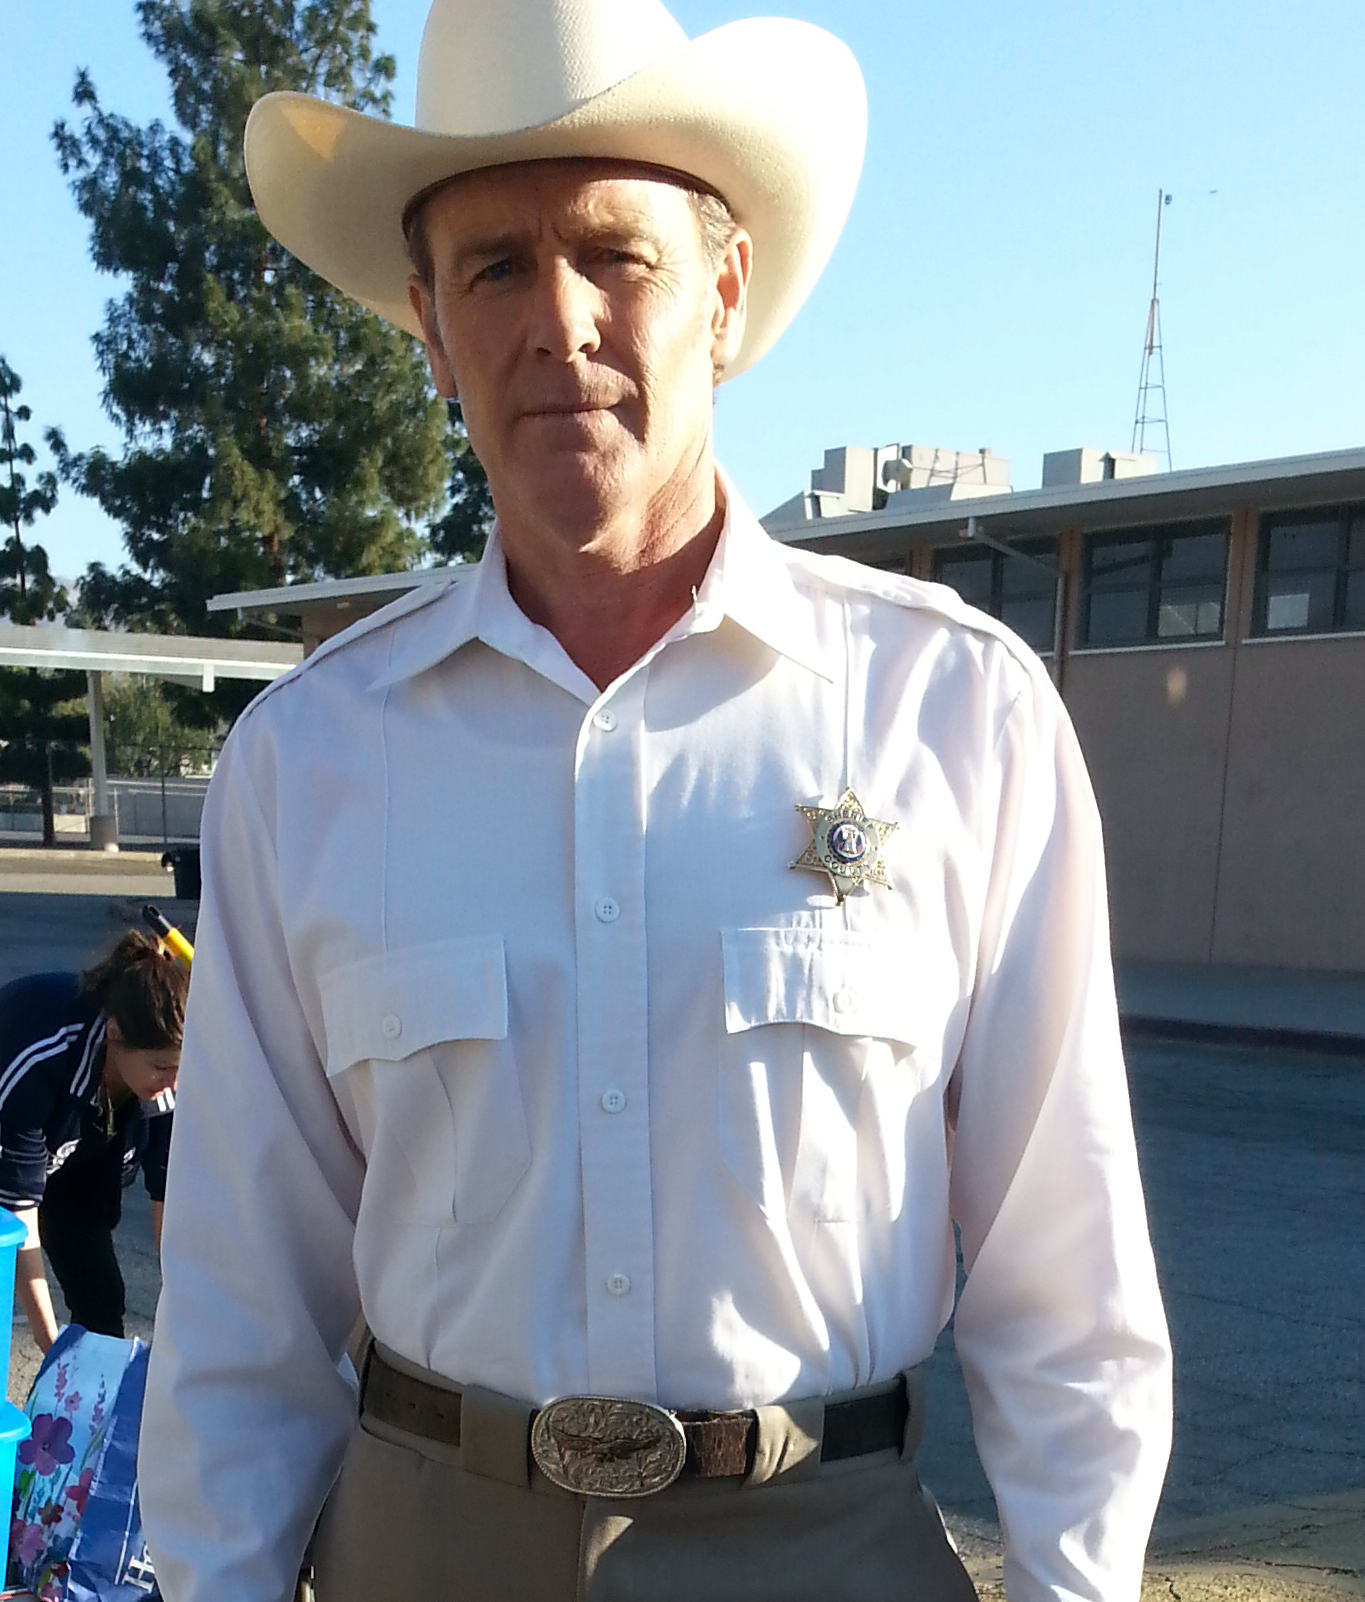 Sheriff Applebee, 